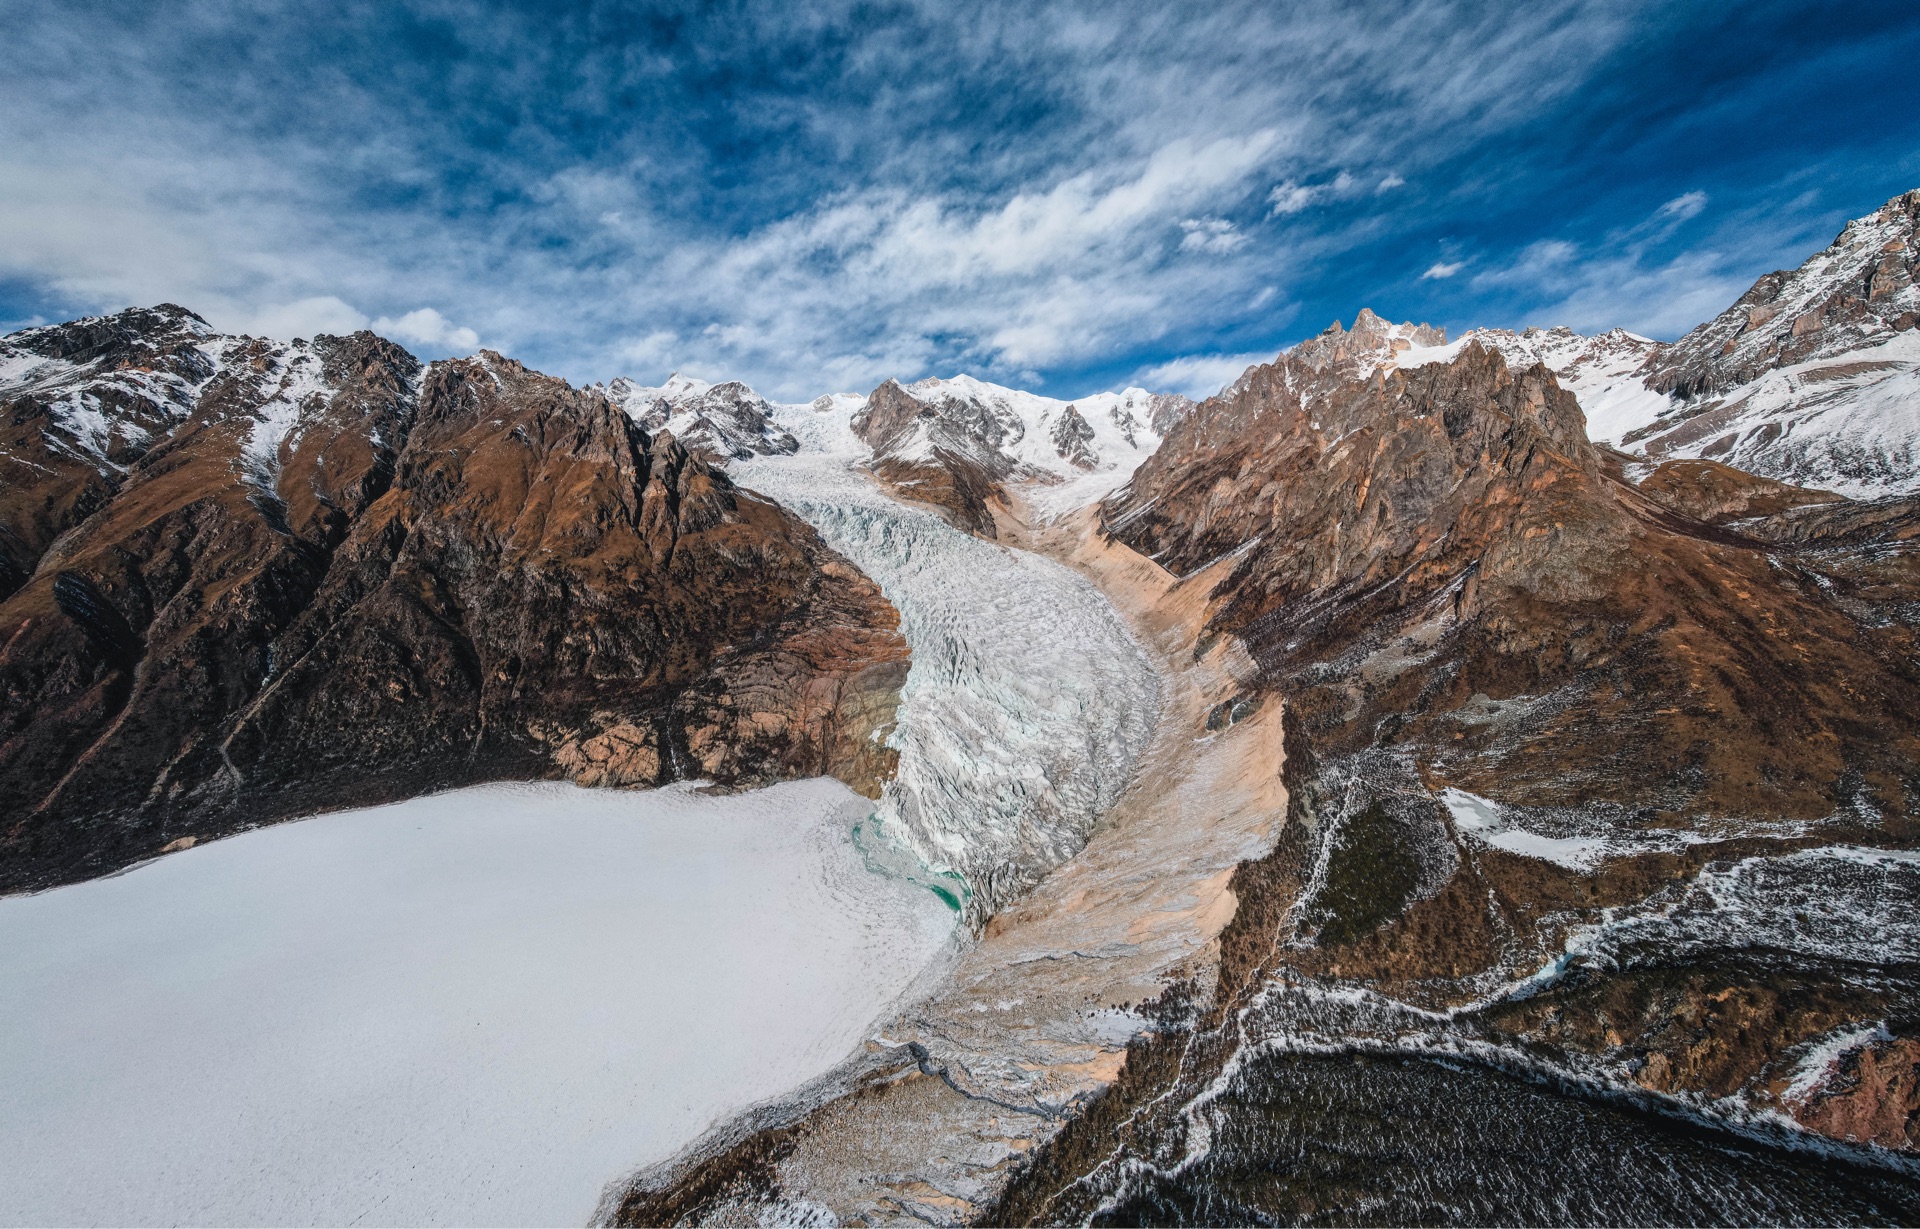 来到布加雪山冰川群的坡戈冰川和足学会冰川：天气理想开车就能达湖边，已知对外开放的几条冰川，大多数游客都能到达，可作为环线游玩~